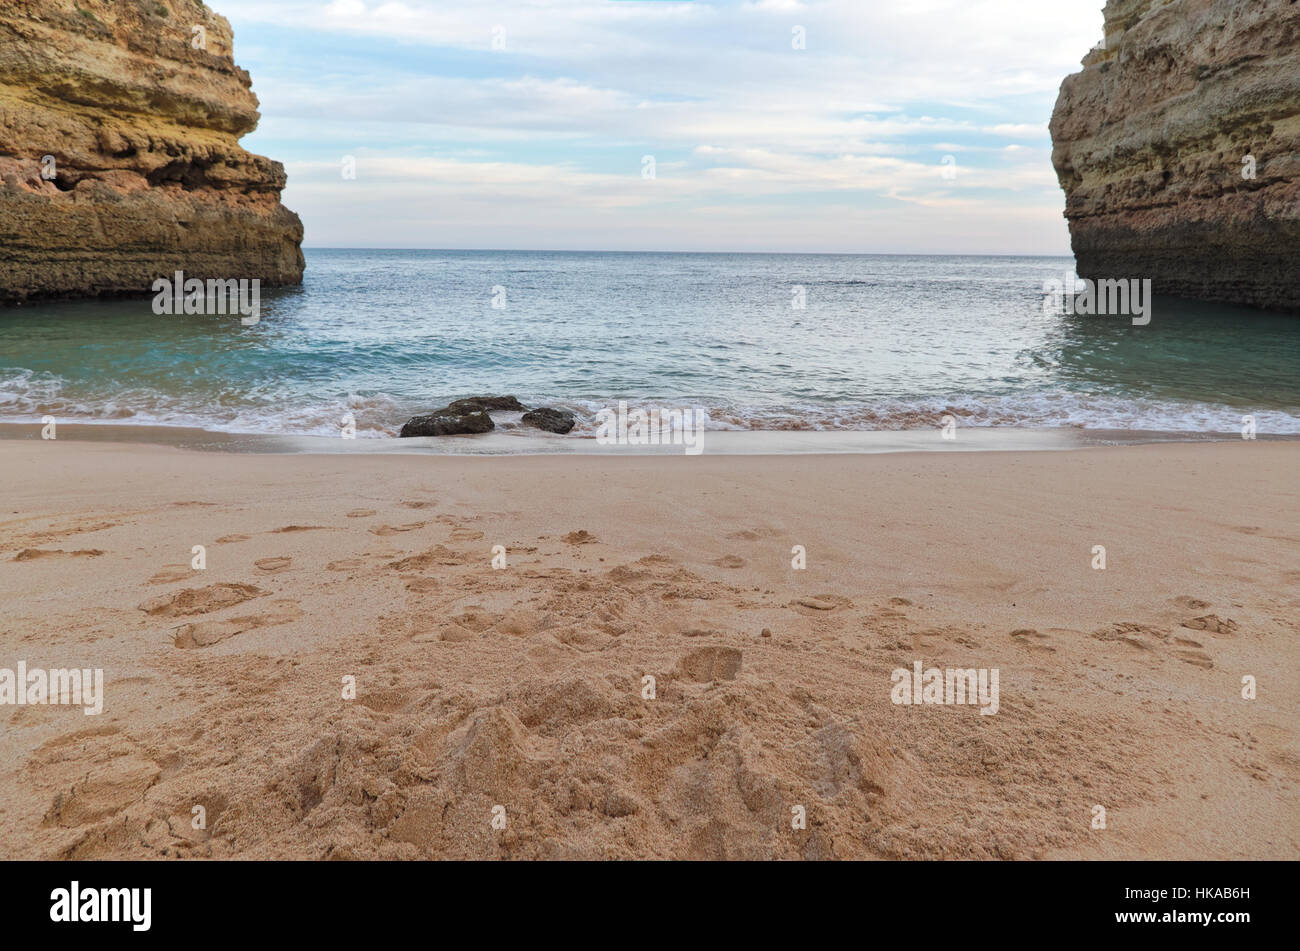 Cliffs and sea in Lagoa. Algarve beaches in Portugal Stock Photo